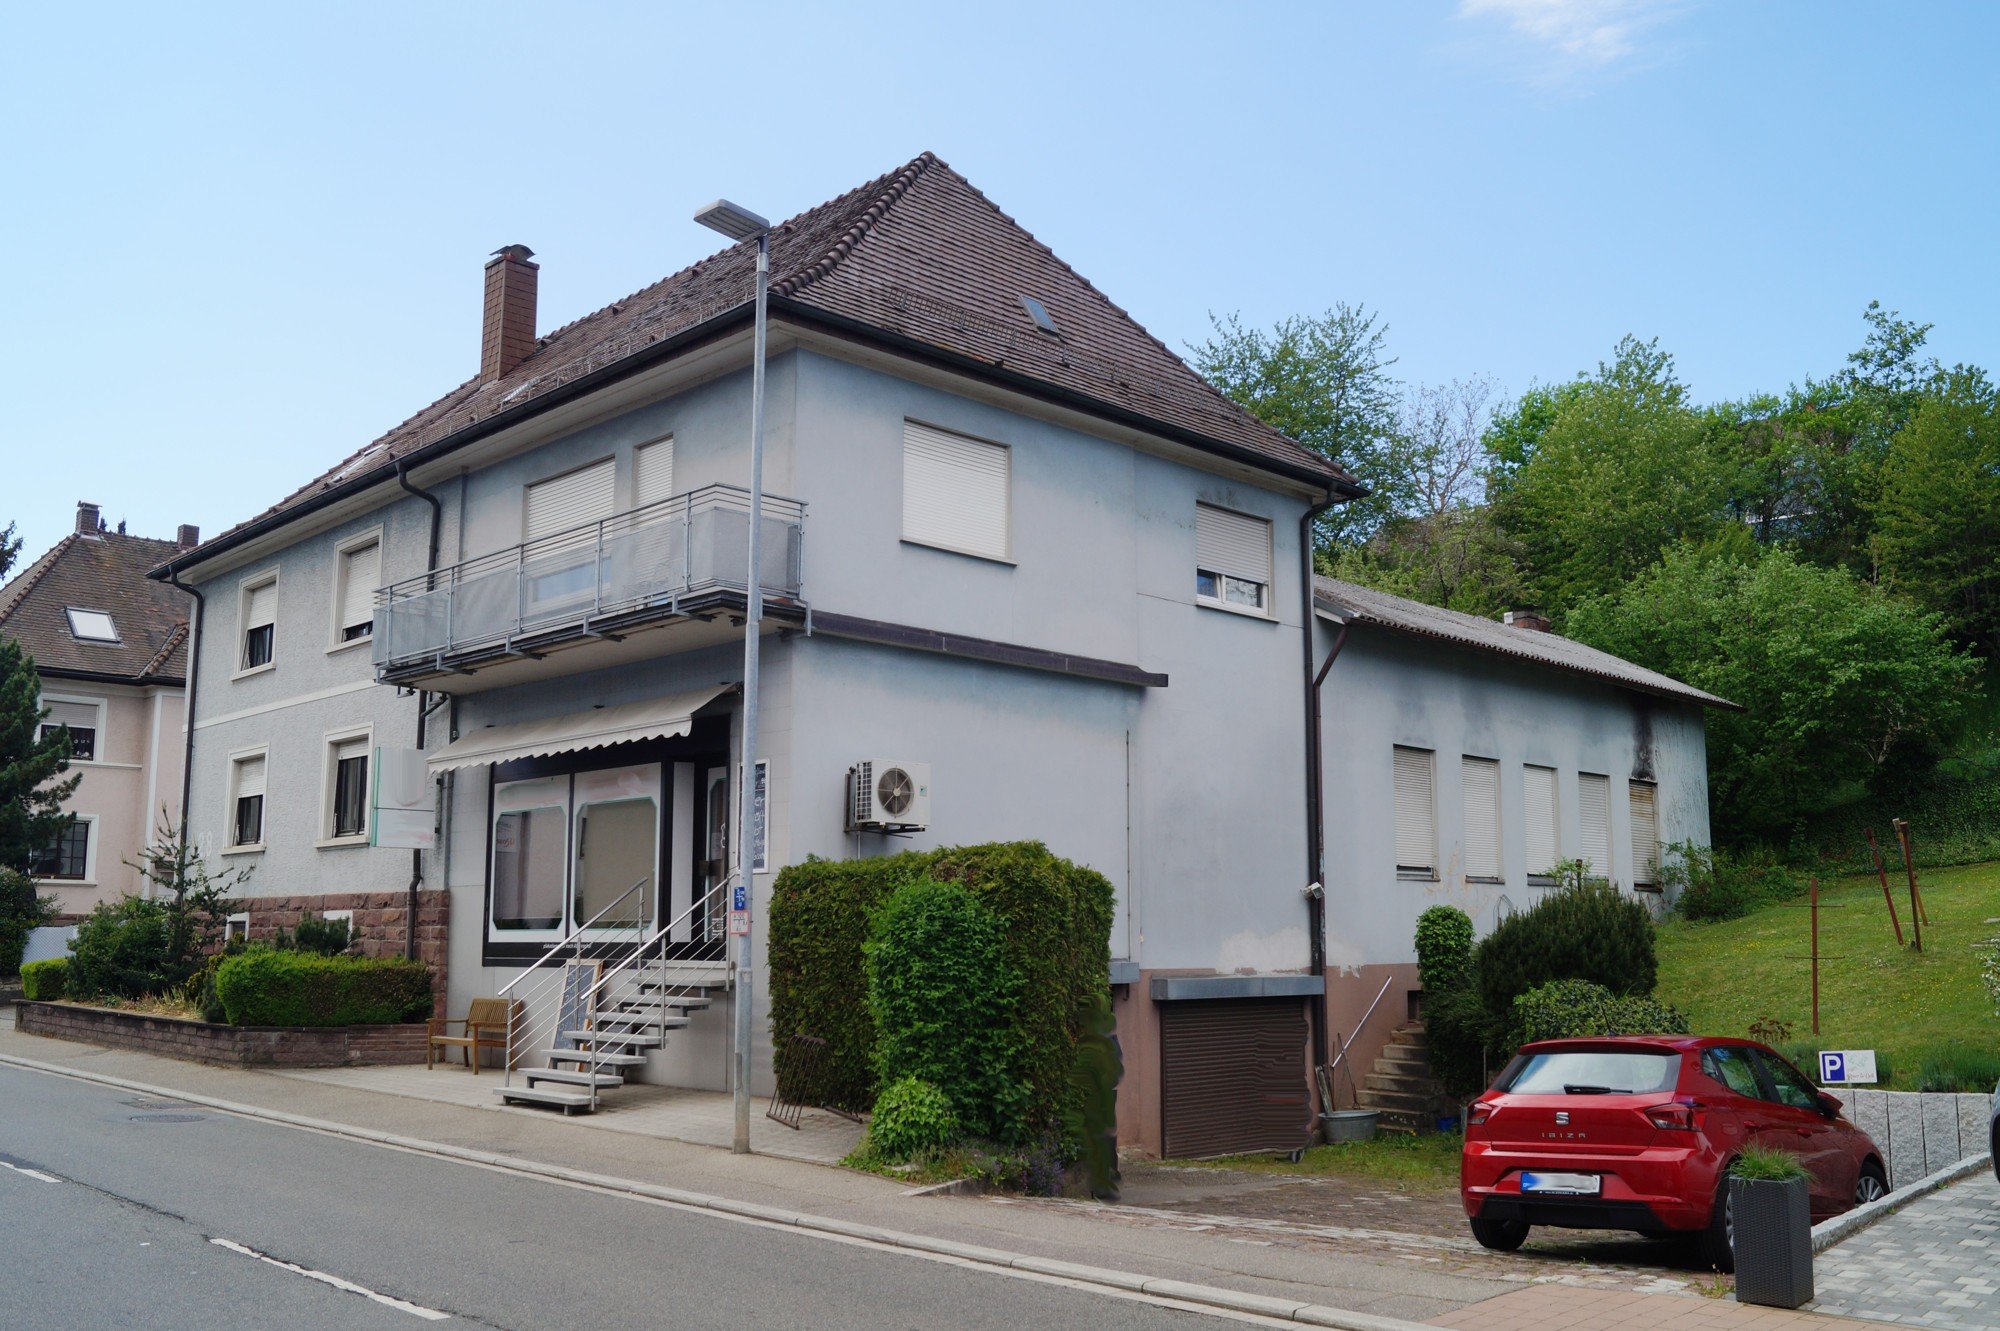 HUST Immobilien GmbH & Co. KG - Immobilienangebot - Pfinztal / Kleinsteinbach - Wohn- und Geschäftshaus - Neubauprojekt oder Altbausanierung in Pfinztal-Kleinsteinbach